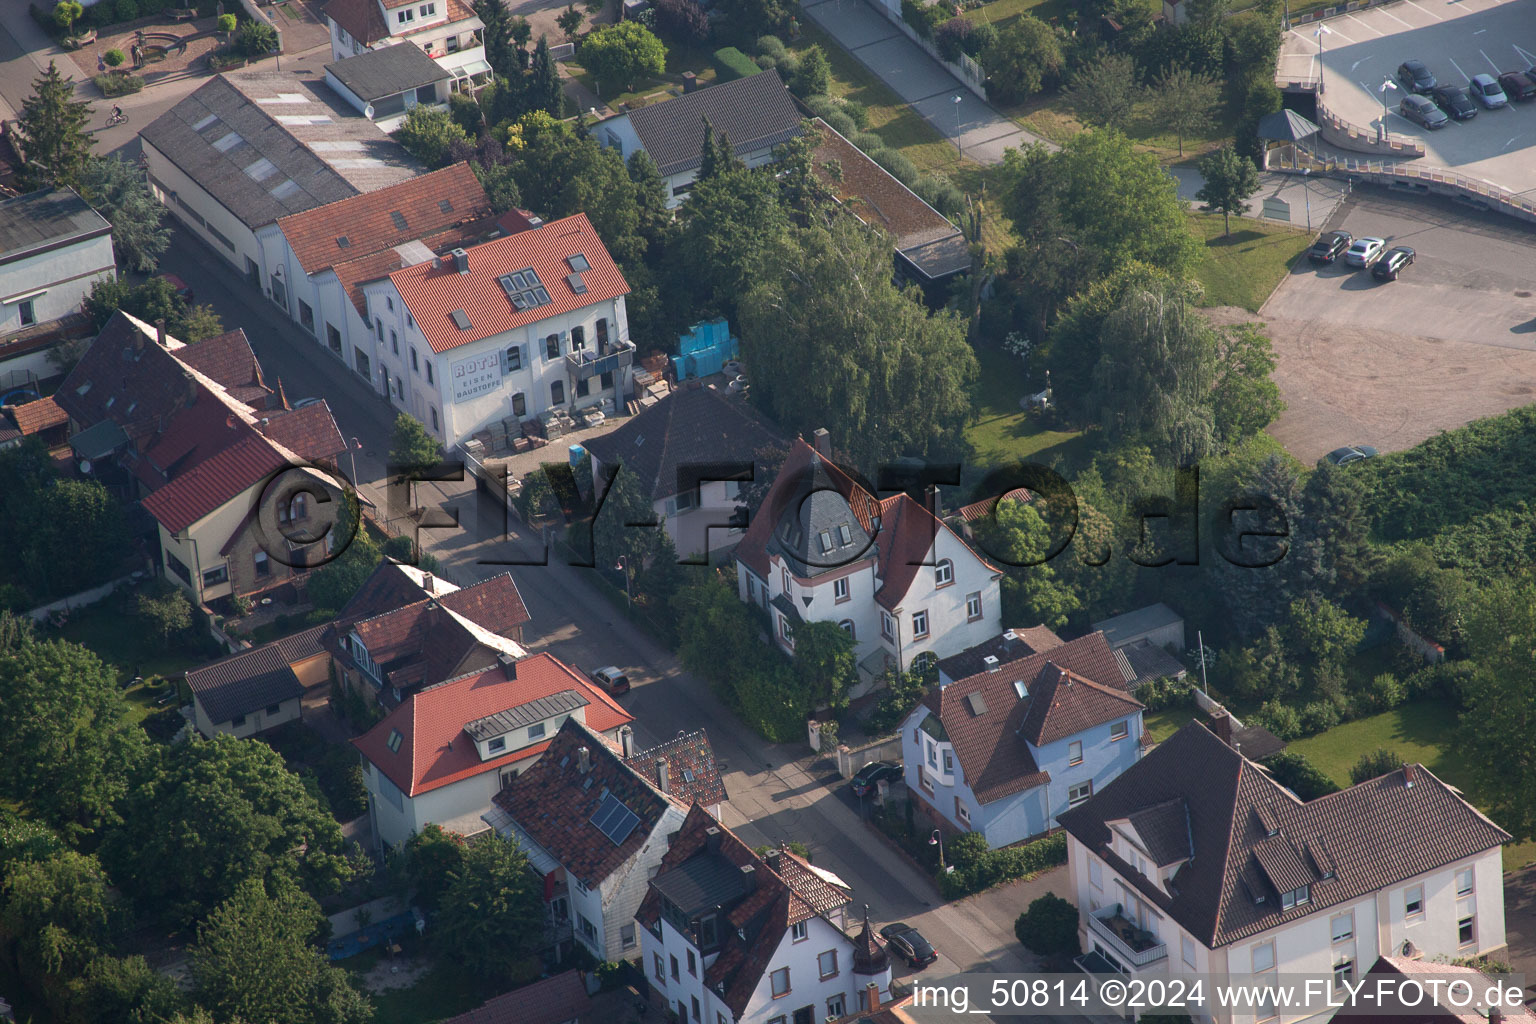 Bismarckstr in Kandel im Bundesland Rheinland-Pfalz, Deutschland von der Drohne aus gesehen